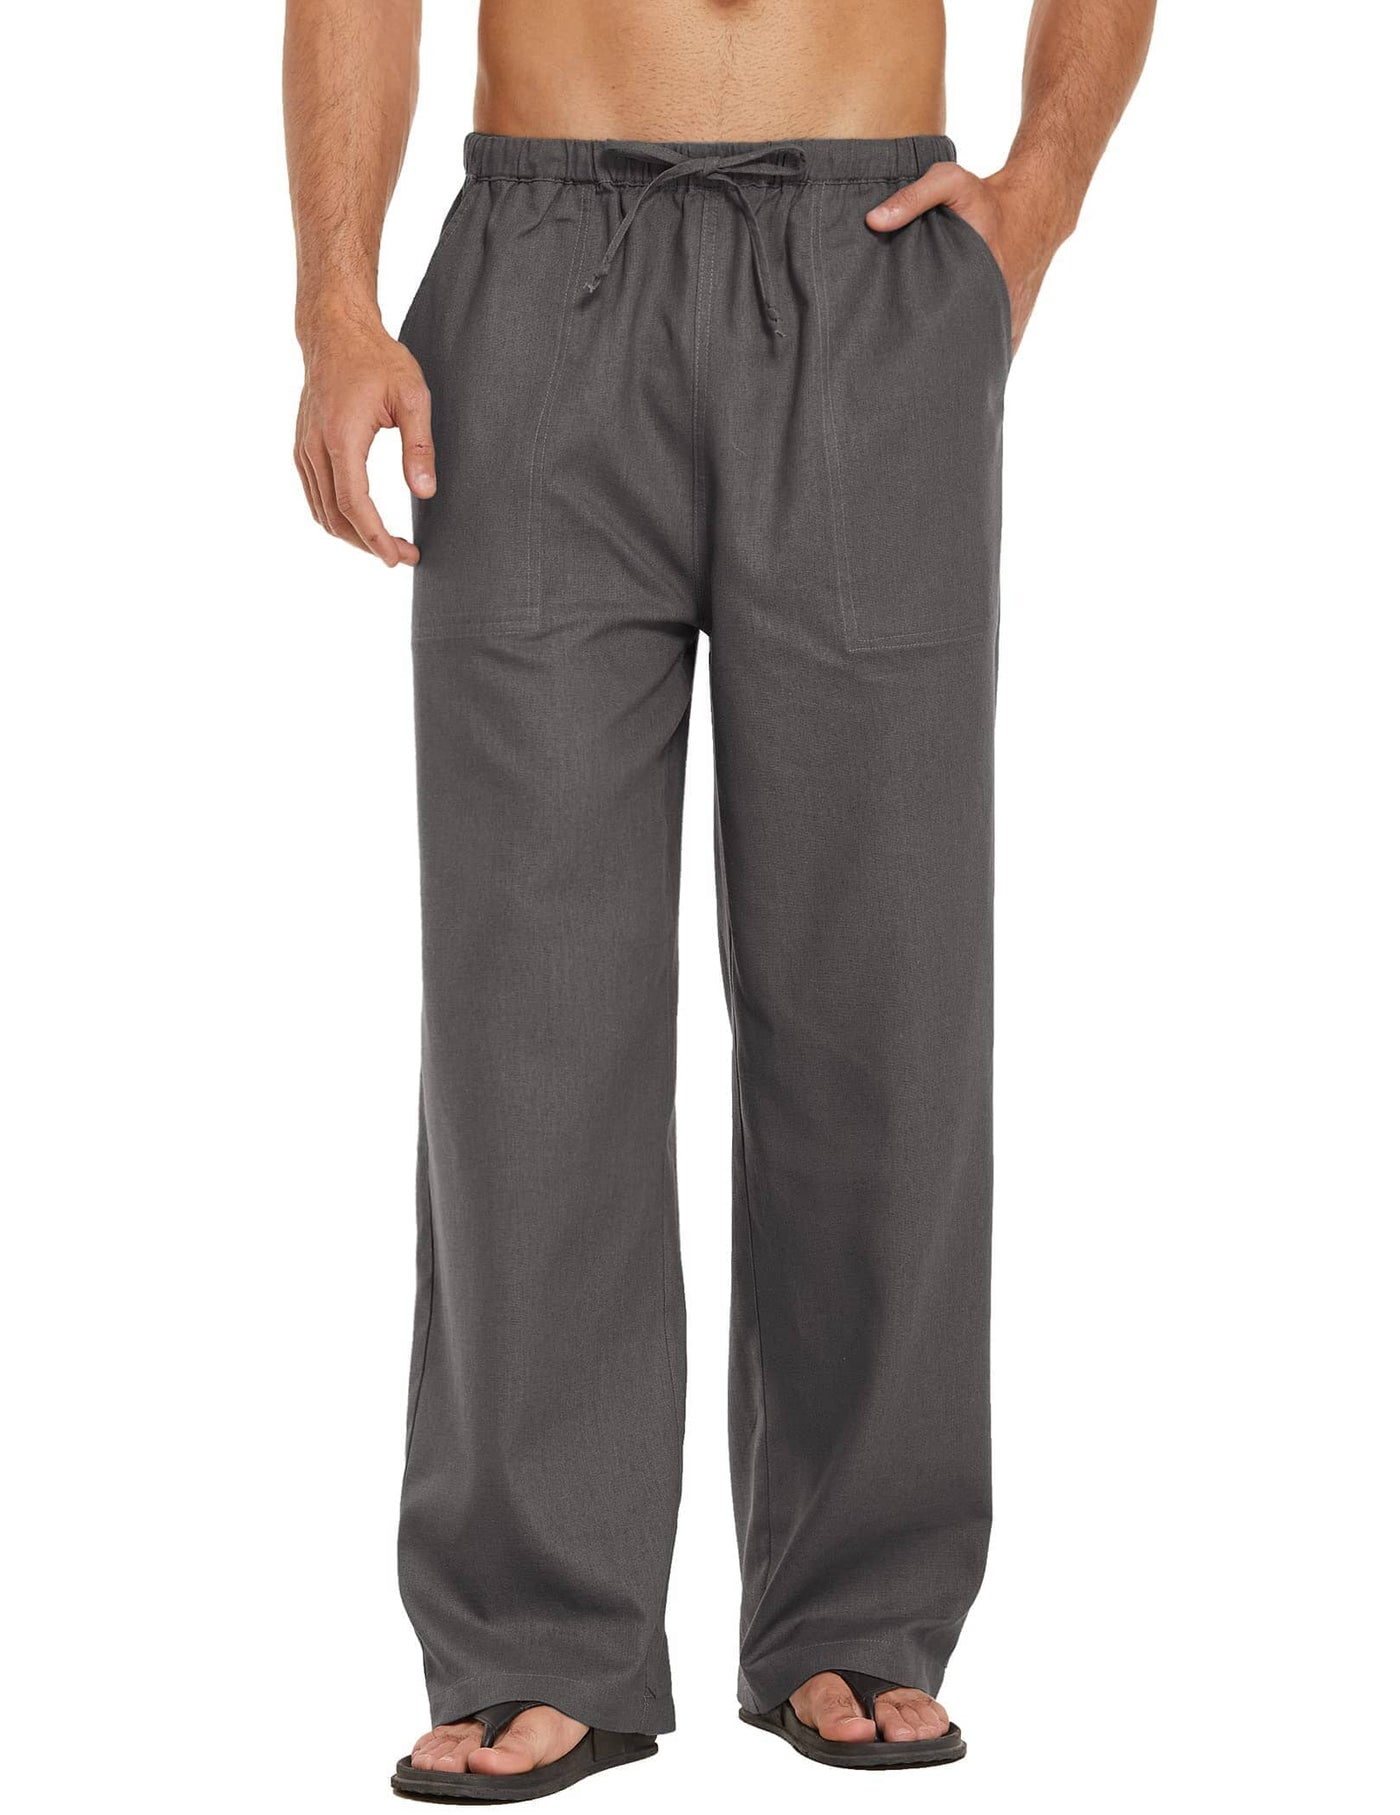 Coofandy Linen Style Loose Waist Yoga Pants (US Only) Pants coofandy Dark Grey S 